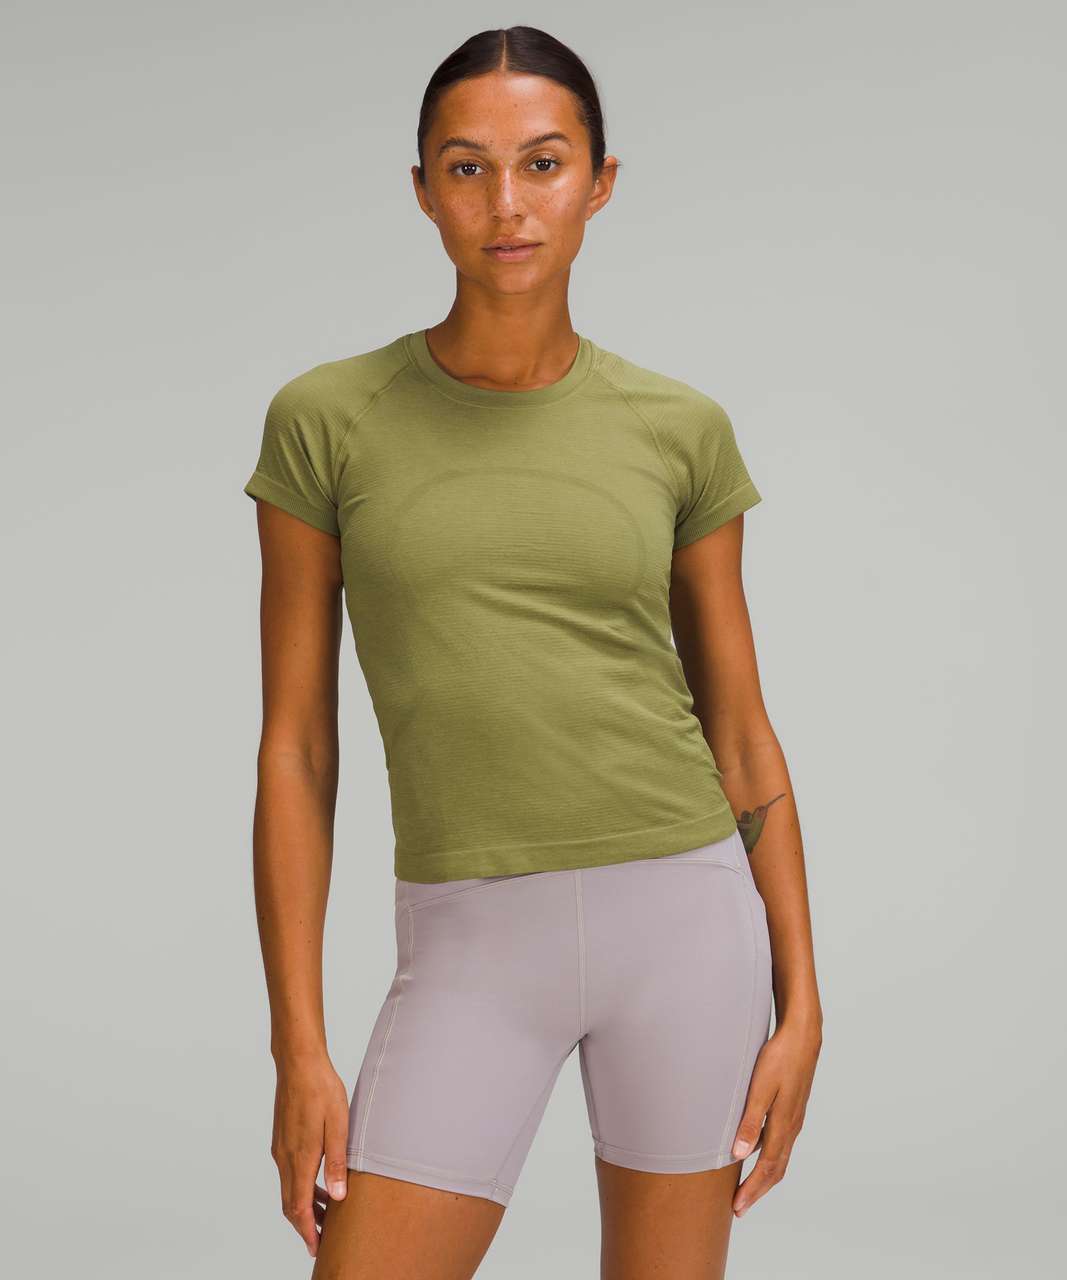 Lululemon Swiftly Tech Short Sleeve Shirt 2.0 *Race Length - Bronze Green / Bronze Green